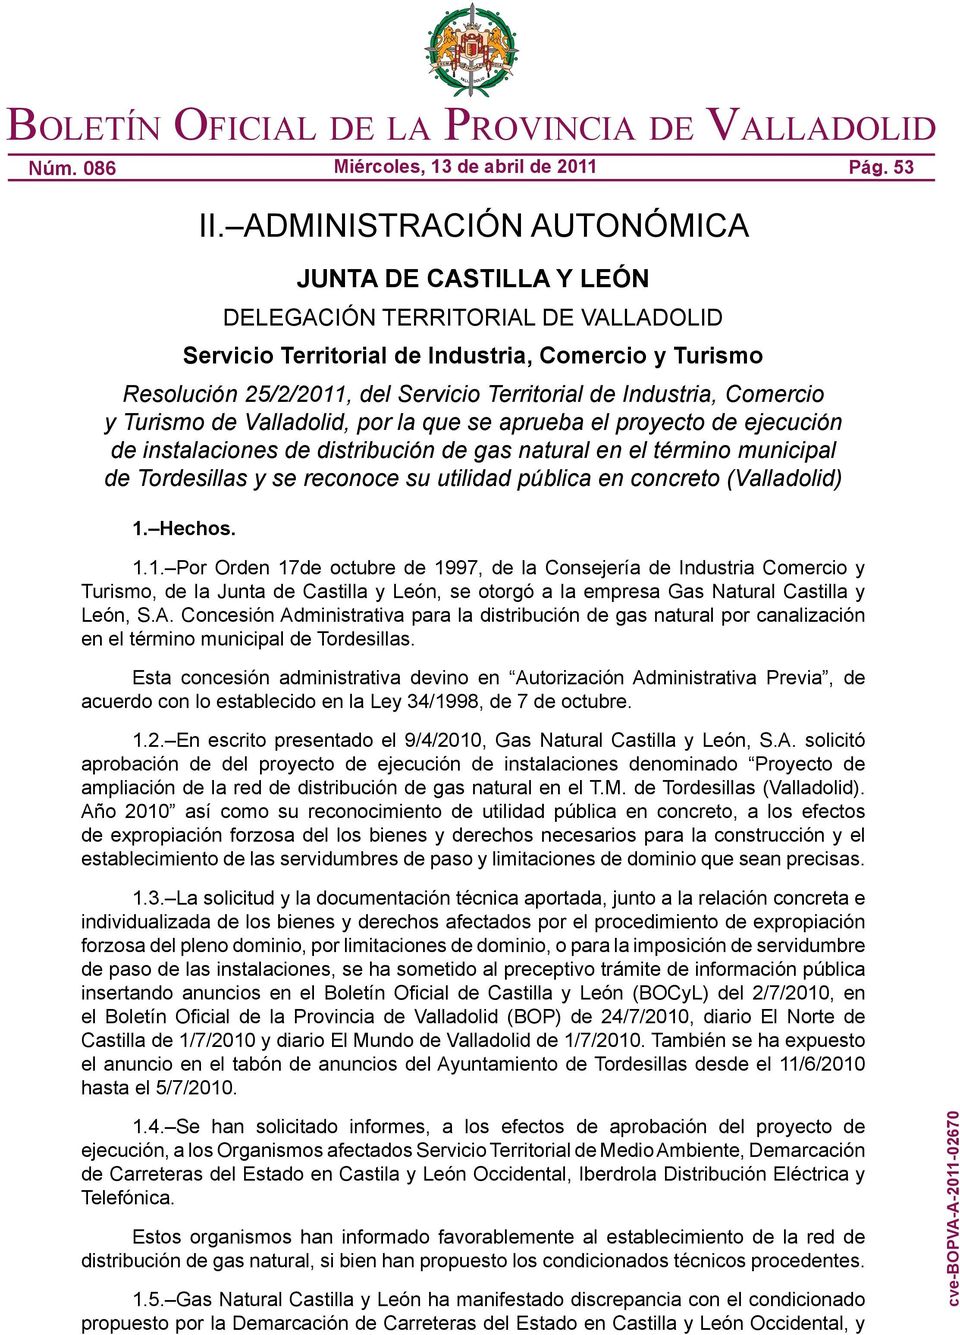 Industria, Comercio y Turismo de Valladolid, por la que se aprueba el proyecto de ejecución de instalaciones de distribución de gas natural en el término municipal de Tordesillas y se reconoce su